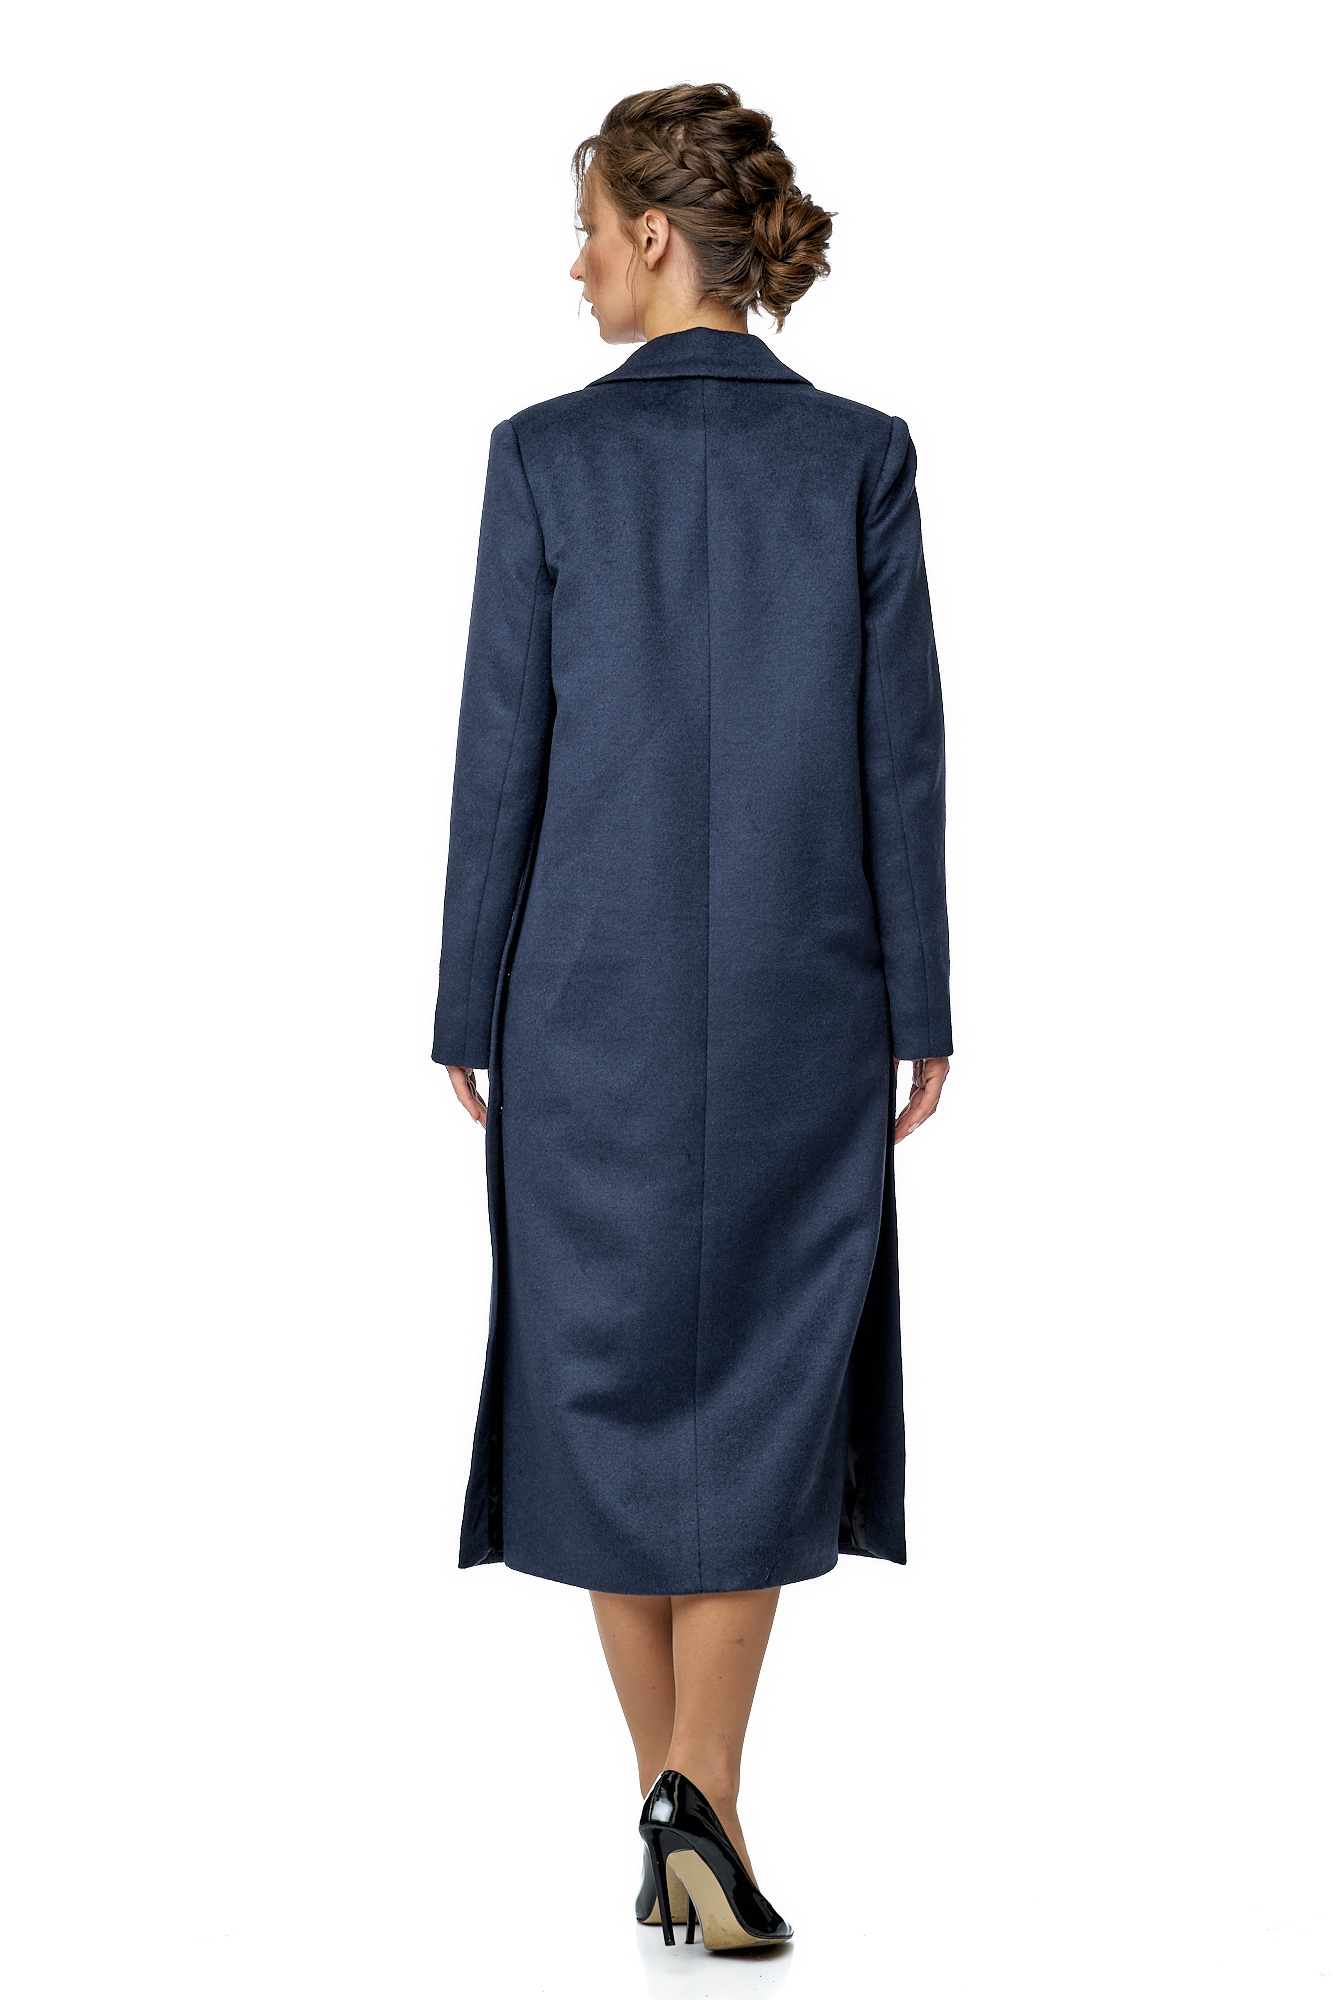 Женское пальто из текстиля с воротником 8002295-4